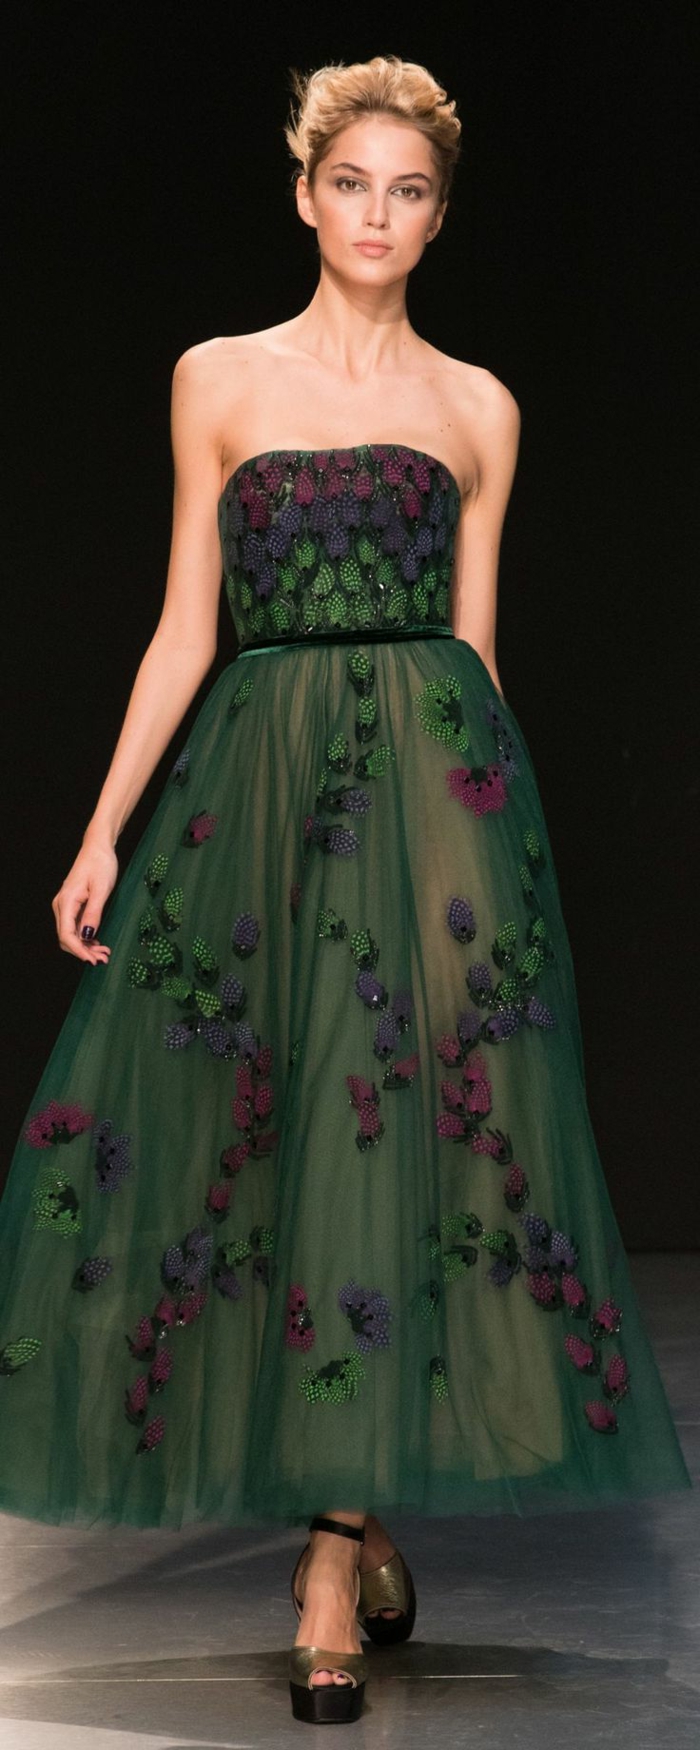 langes dunkelgrünes schulterfreies Kleid mit schmalem schwarzen Gürtel und vielen blauen, lila und grünen Applizierungen, kombiniert mit Plattformsandalen in Goldfarbe